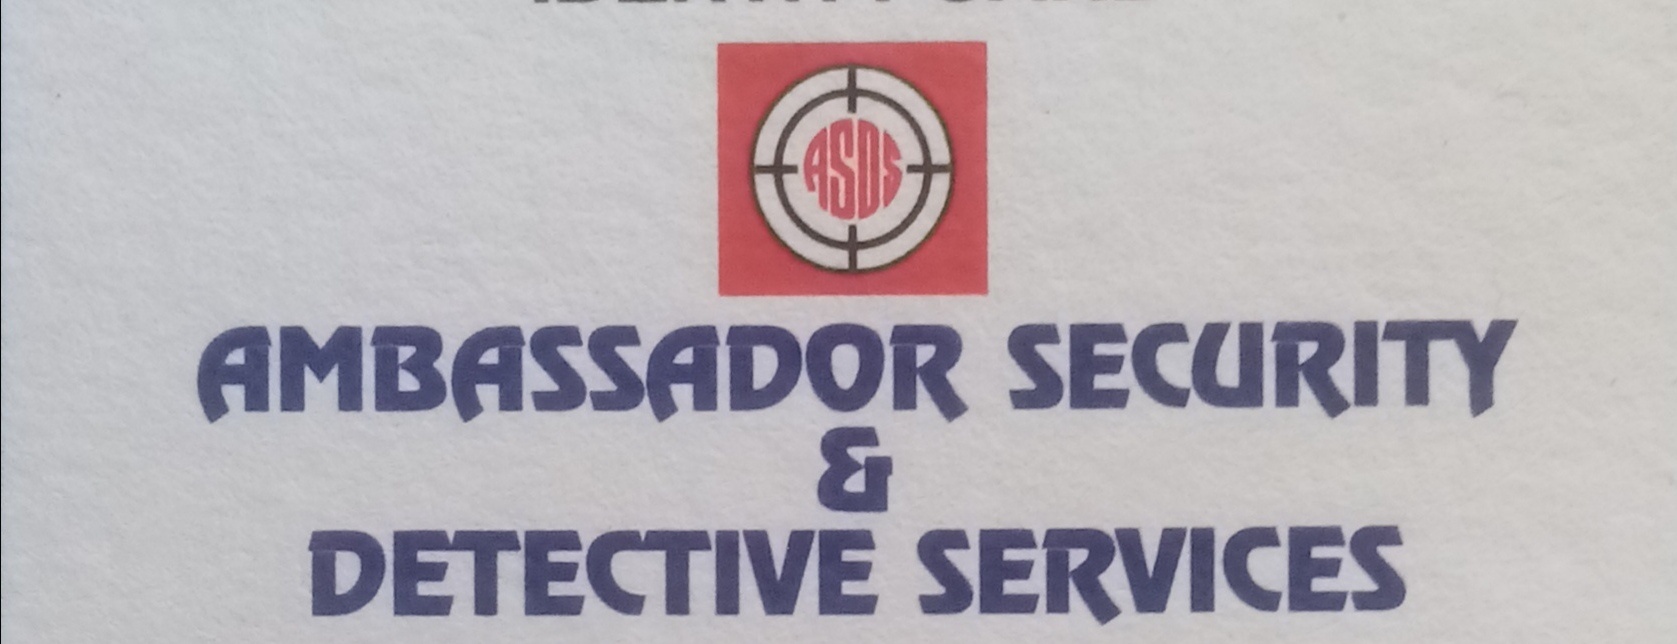 Security/ Guard service